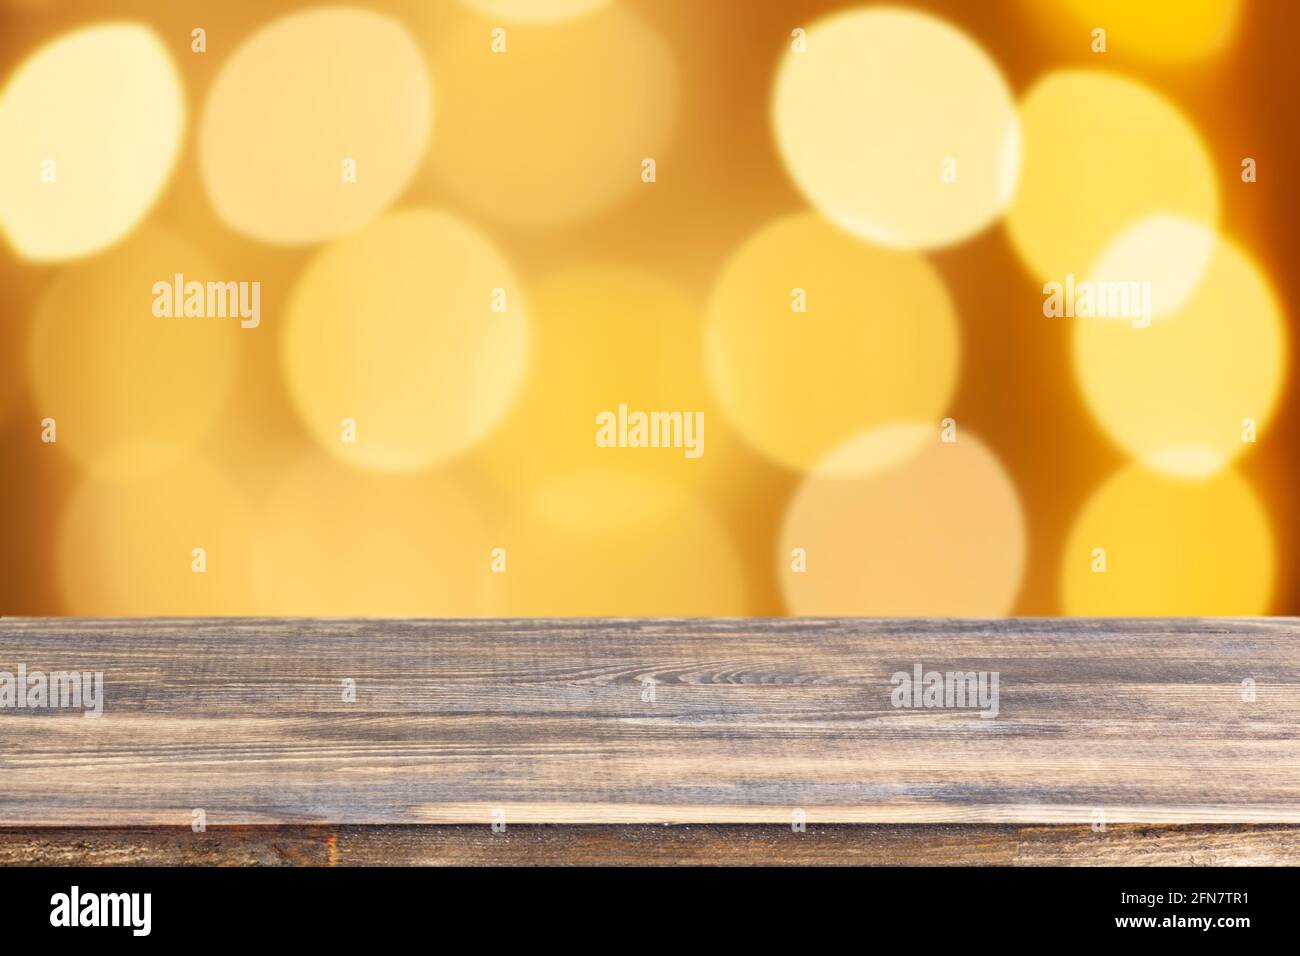 Holz Tischplatte auf verwischen gelben weihnachtsbaum Lichter Hintergrund Stockfoto